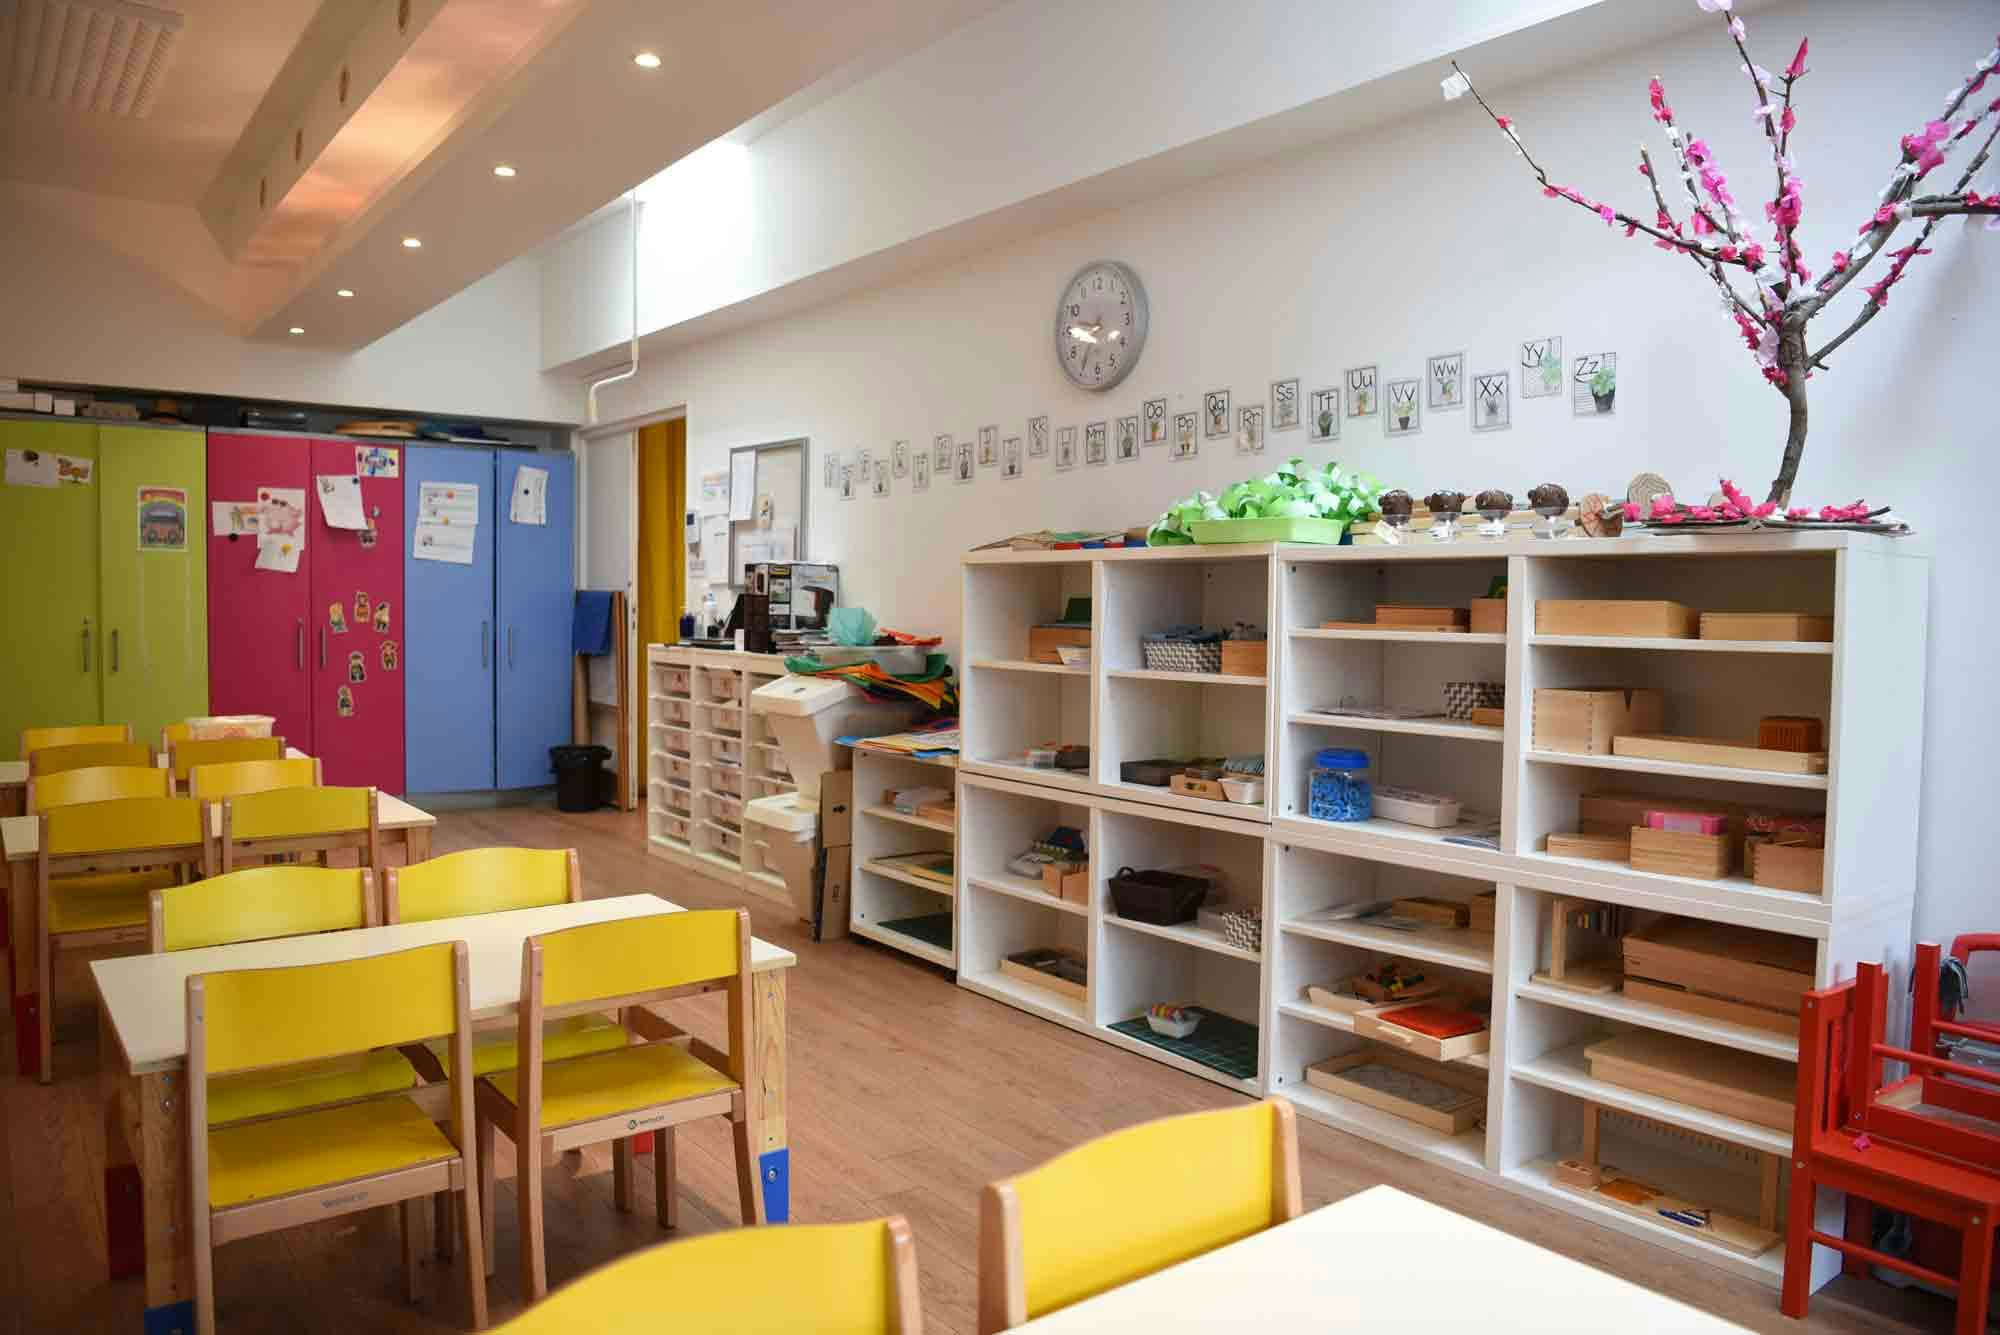 Salle de cours d'école maternelle avec des étagères et un cerisier fait en papier